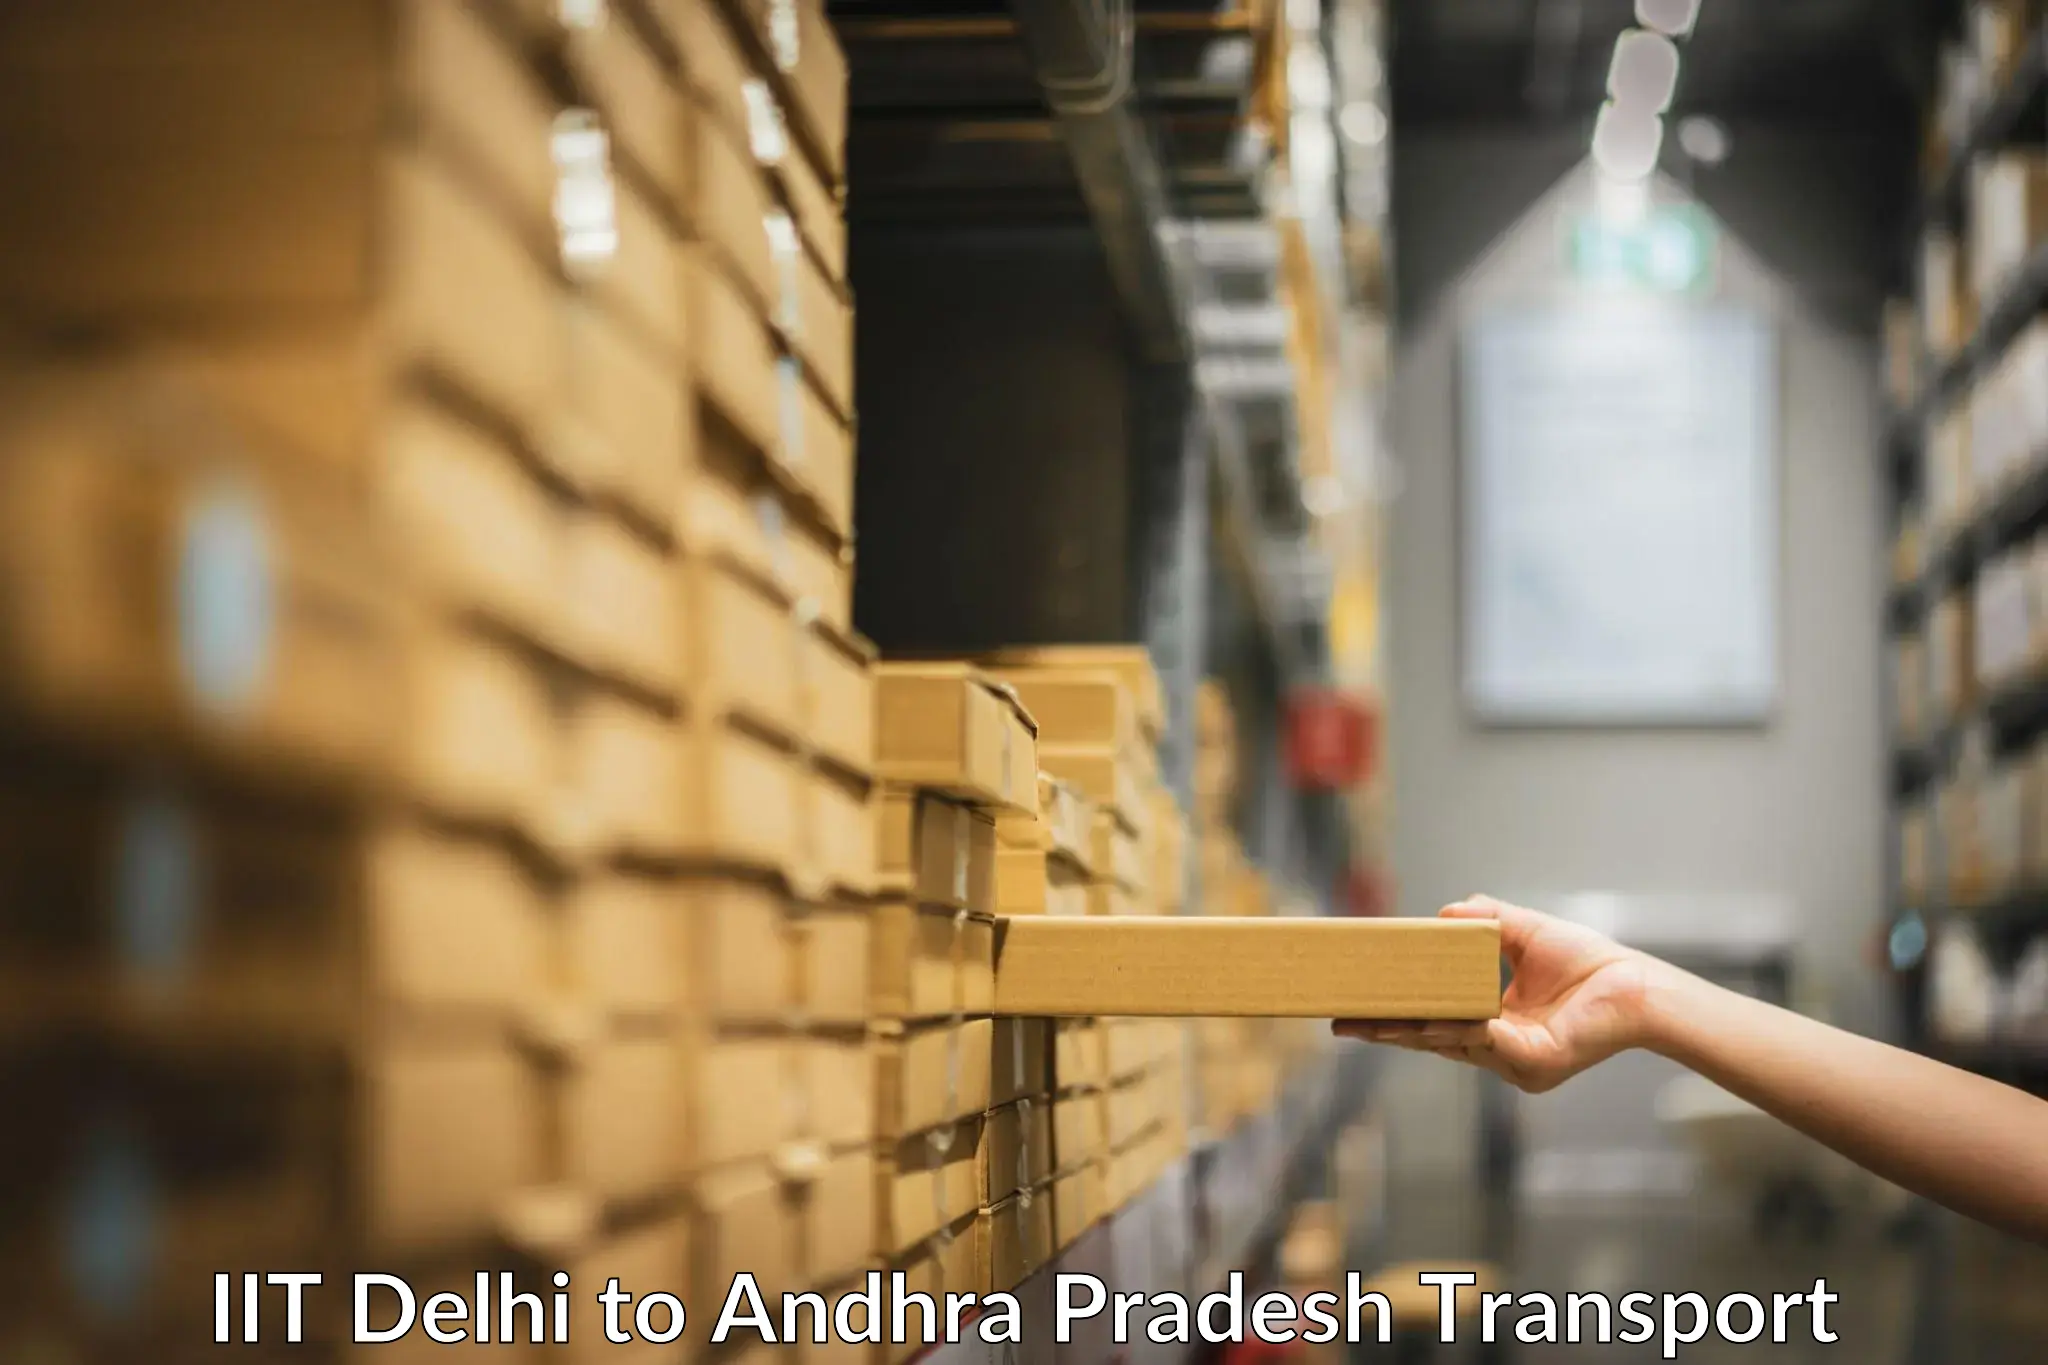 Bike shipping service IIT Delhi to Koduru